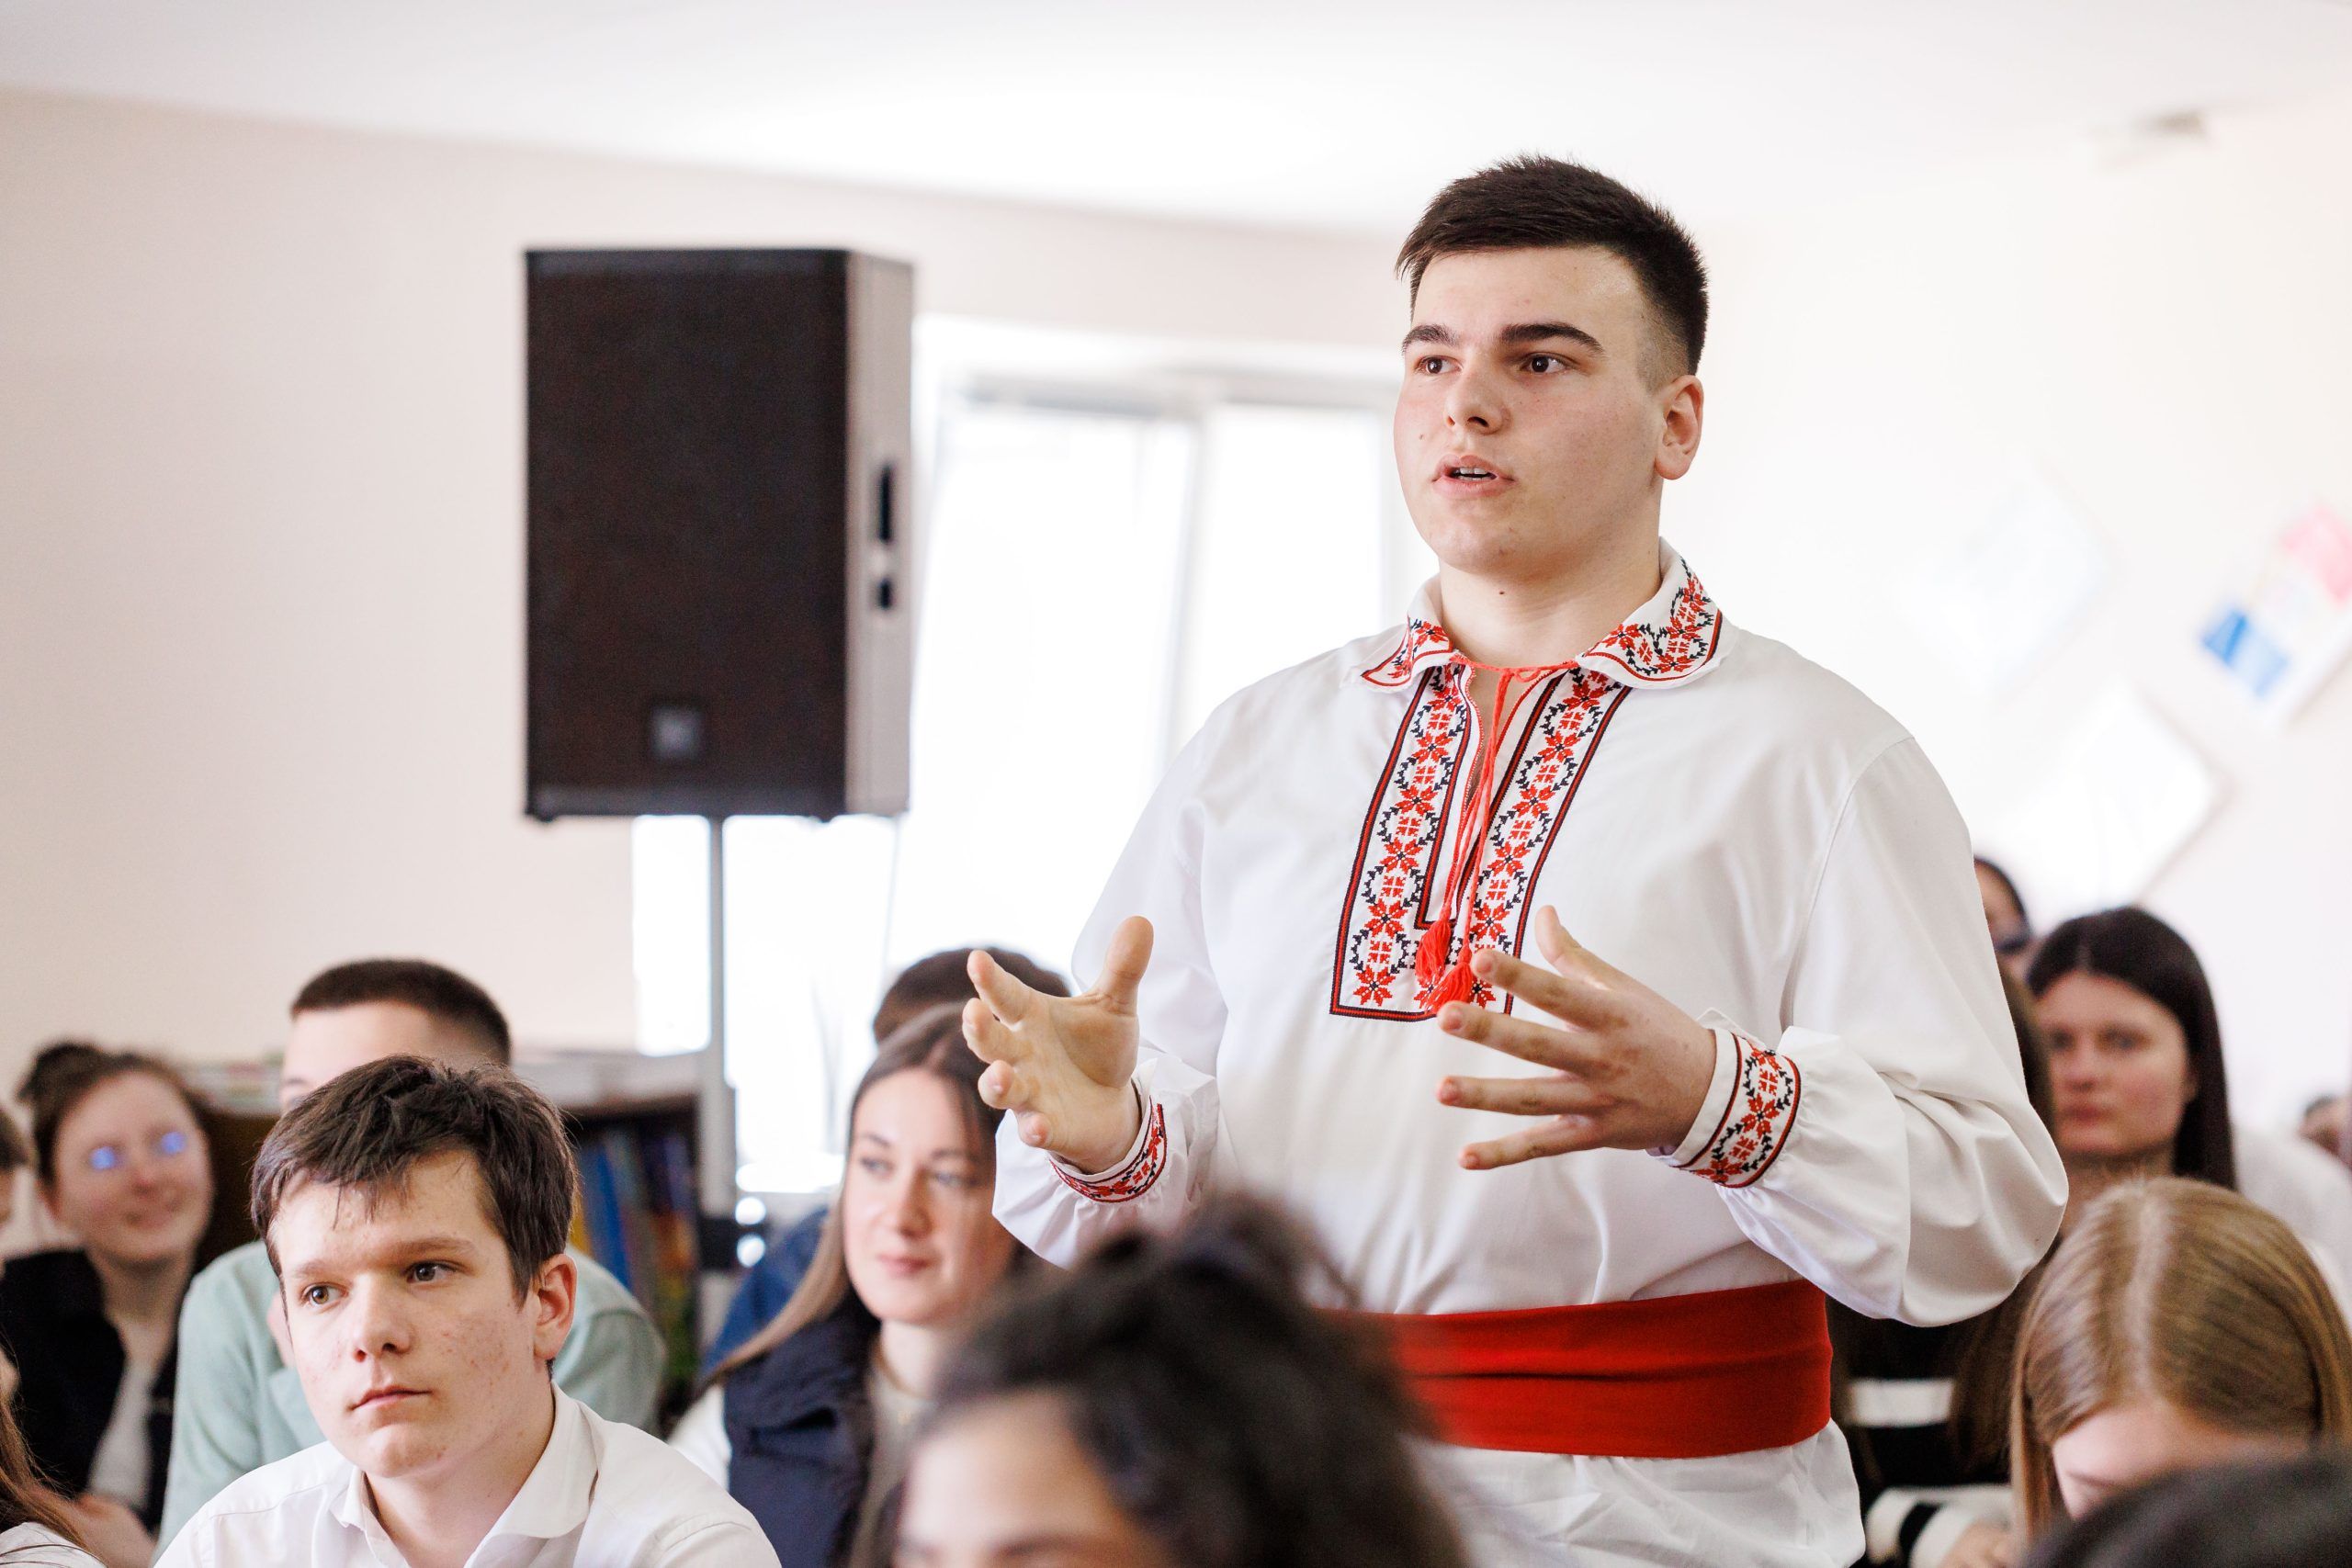 В пятницу, вместе с послом ЕС в Кишиневе Янисом Мажейксом, мы посетили Теоретический лицей в Варнице, где учатся более 300 учеников. Многие из них ежедневно приезжают с левобережья Днестра, из Бендер. Мы общались с молодыми людьми и учителями об образовательных возможностях и обмене опытом с европейскими странами, а также обо всем пути, который Молдова уже прошла на встречу к Европейскому Союзу.